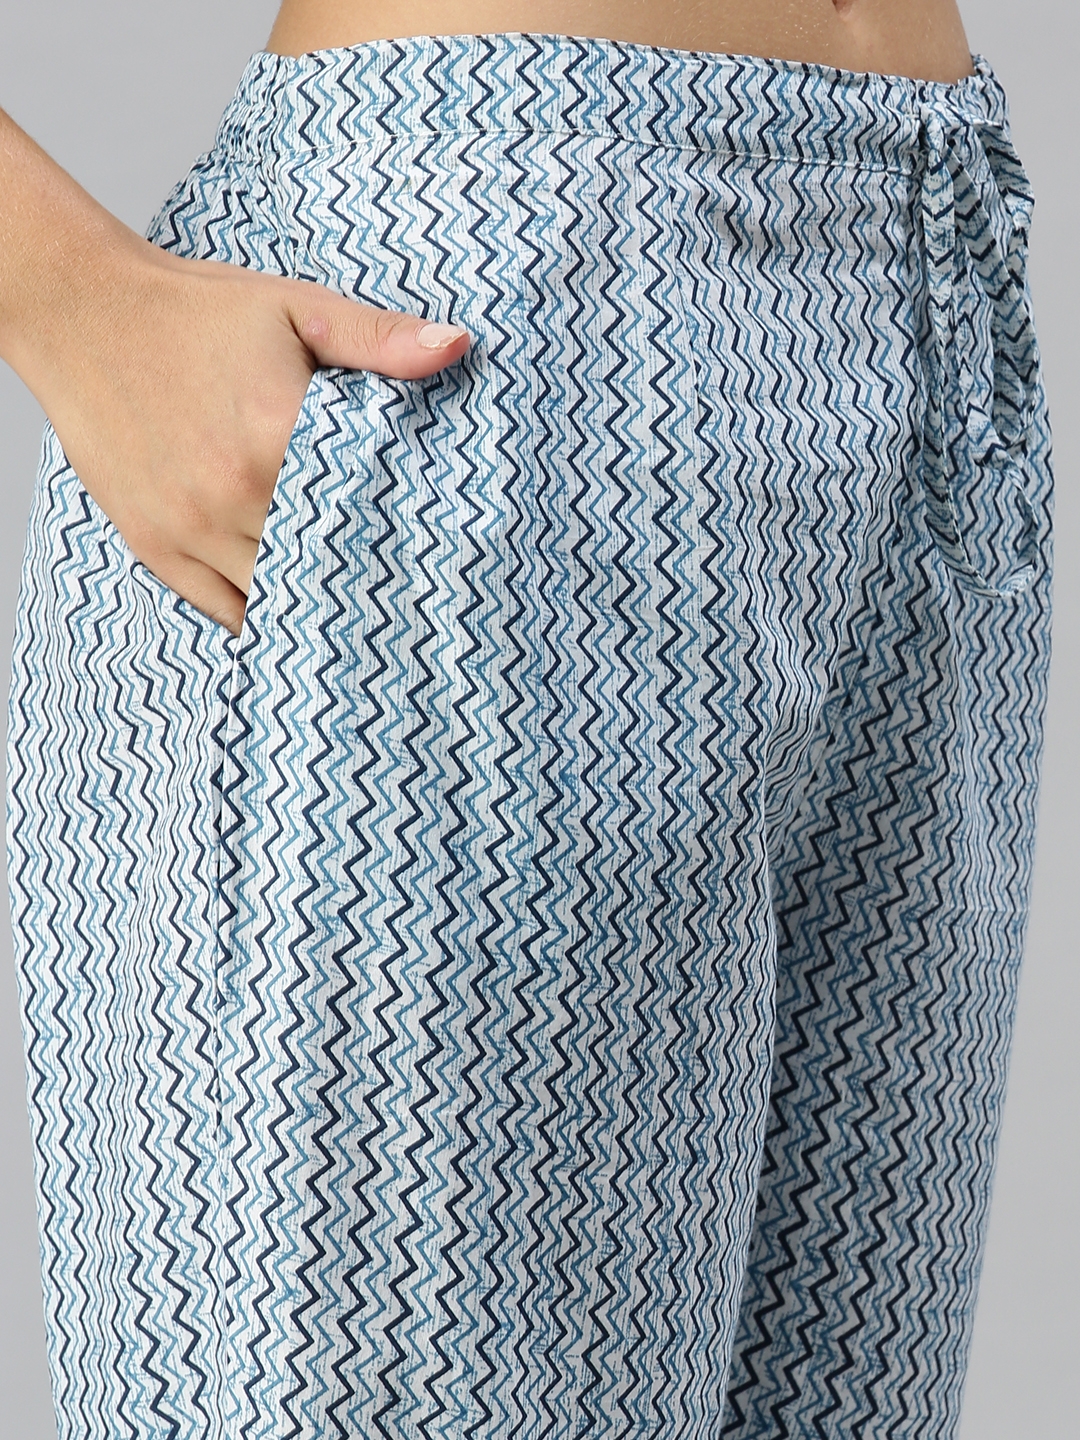 Women's Blue Cotton Blend Printed Regular Kurta Sets